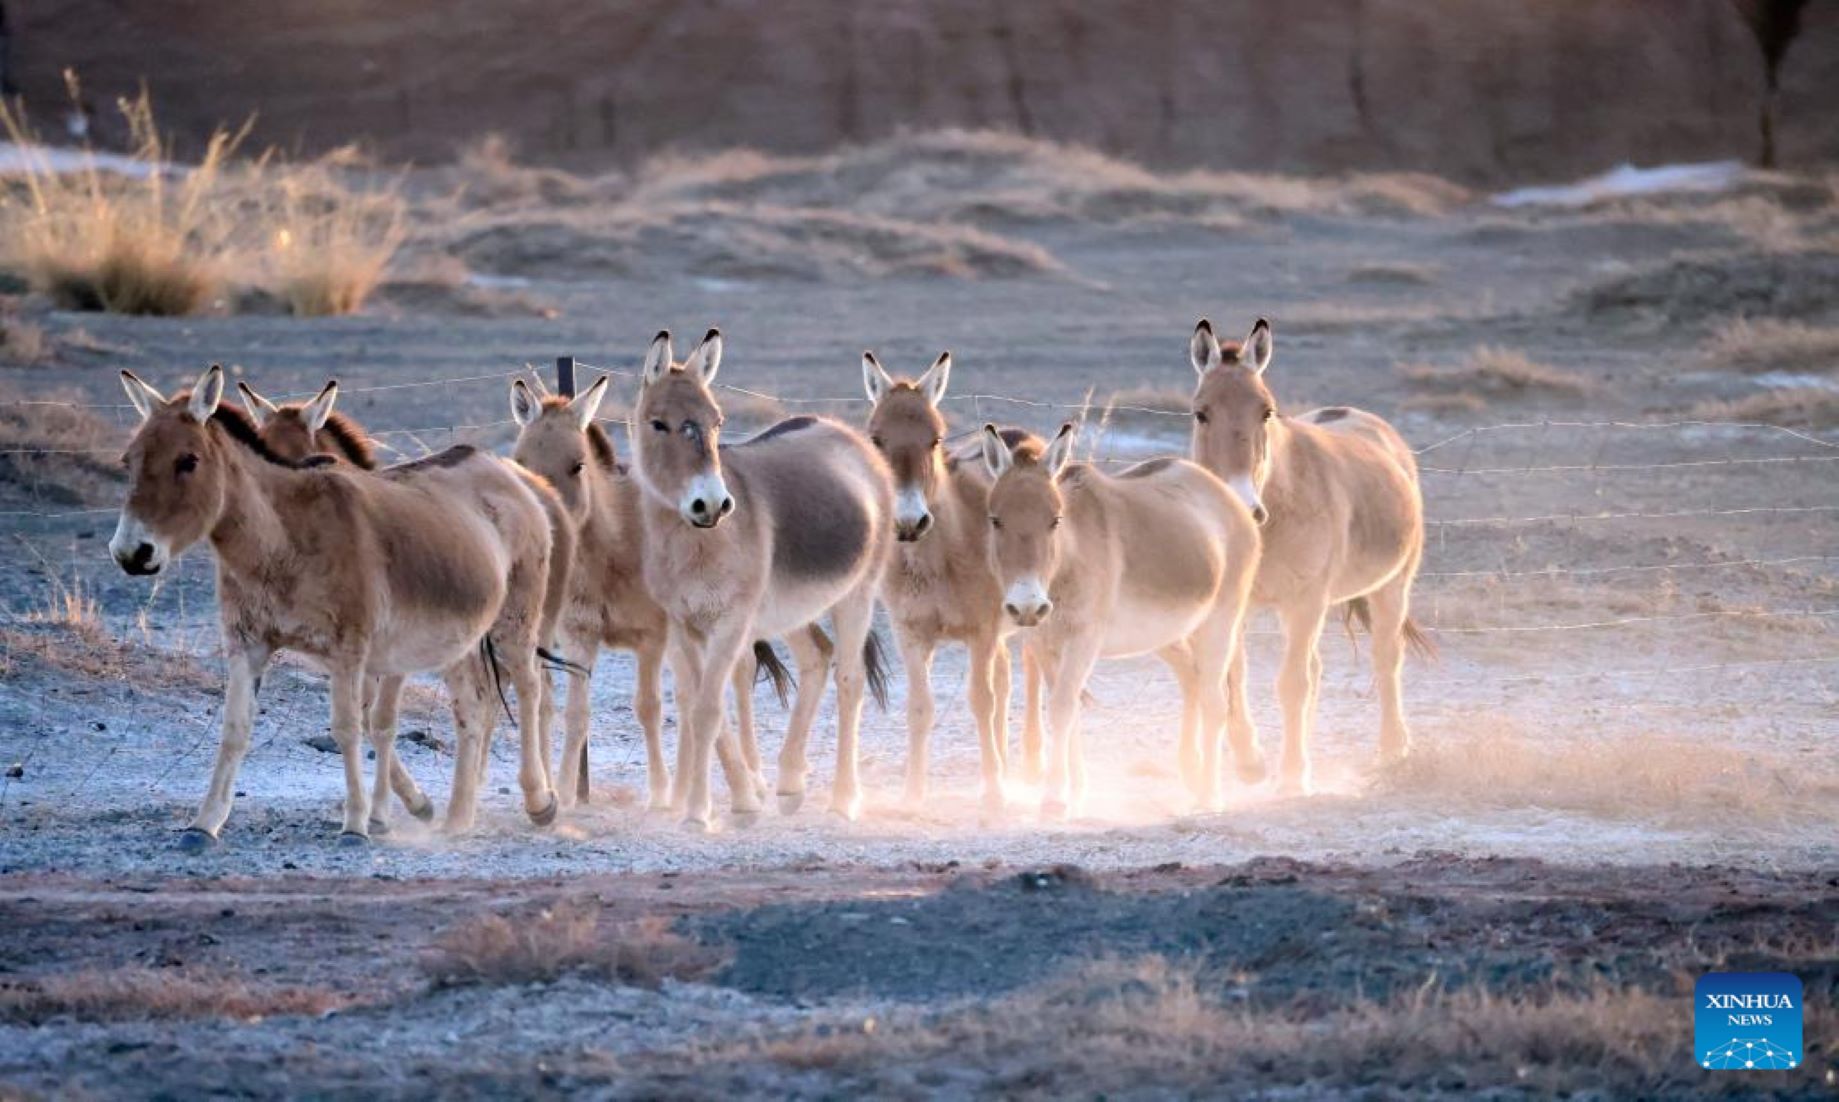 Rare Wild Donkeys Spotted Near China-Mongolia Border